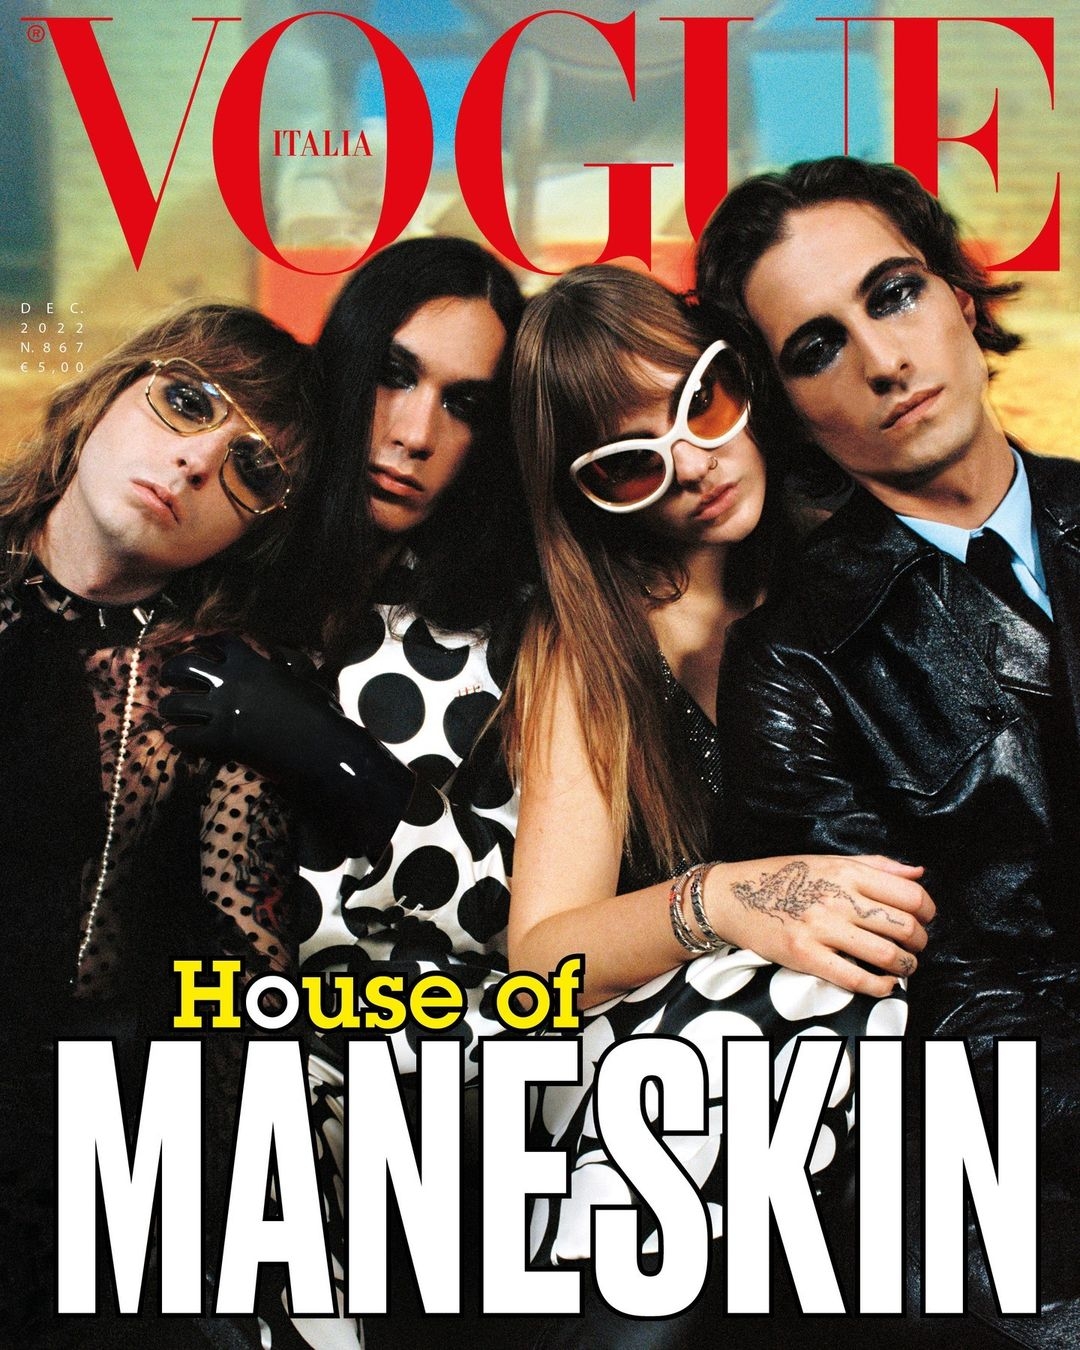 В дерзких нарядах от Gucci. Måneskin снялись в провокационной фотосессии для итальянского Vogue - фото №1